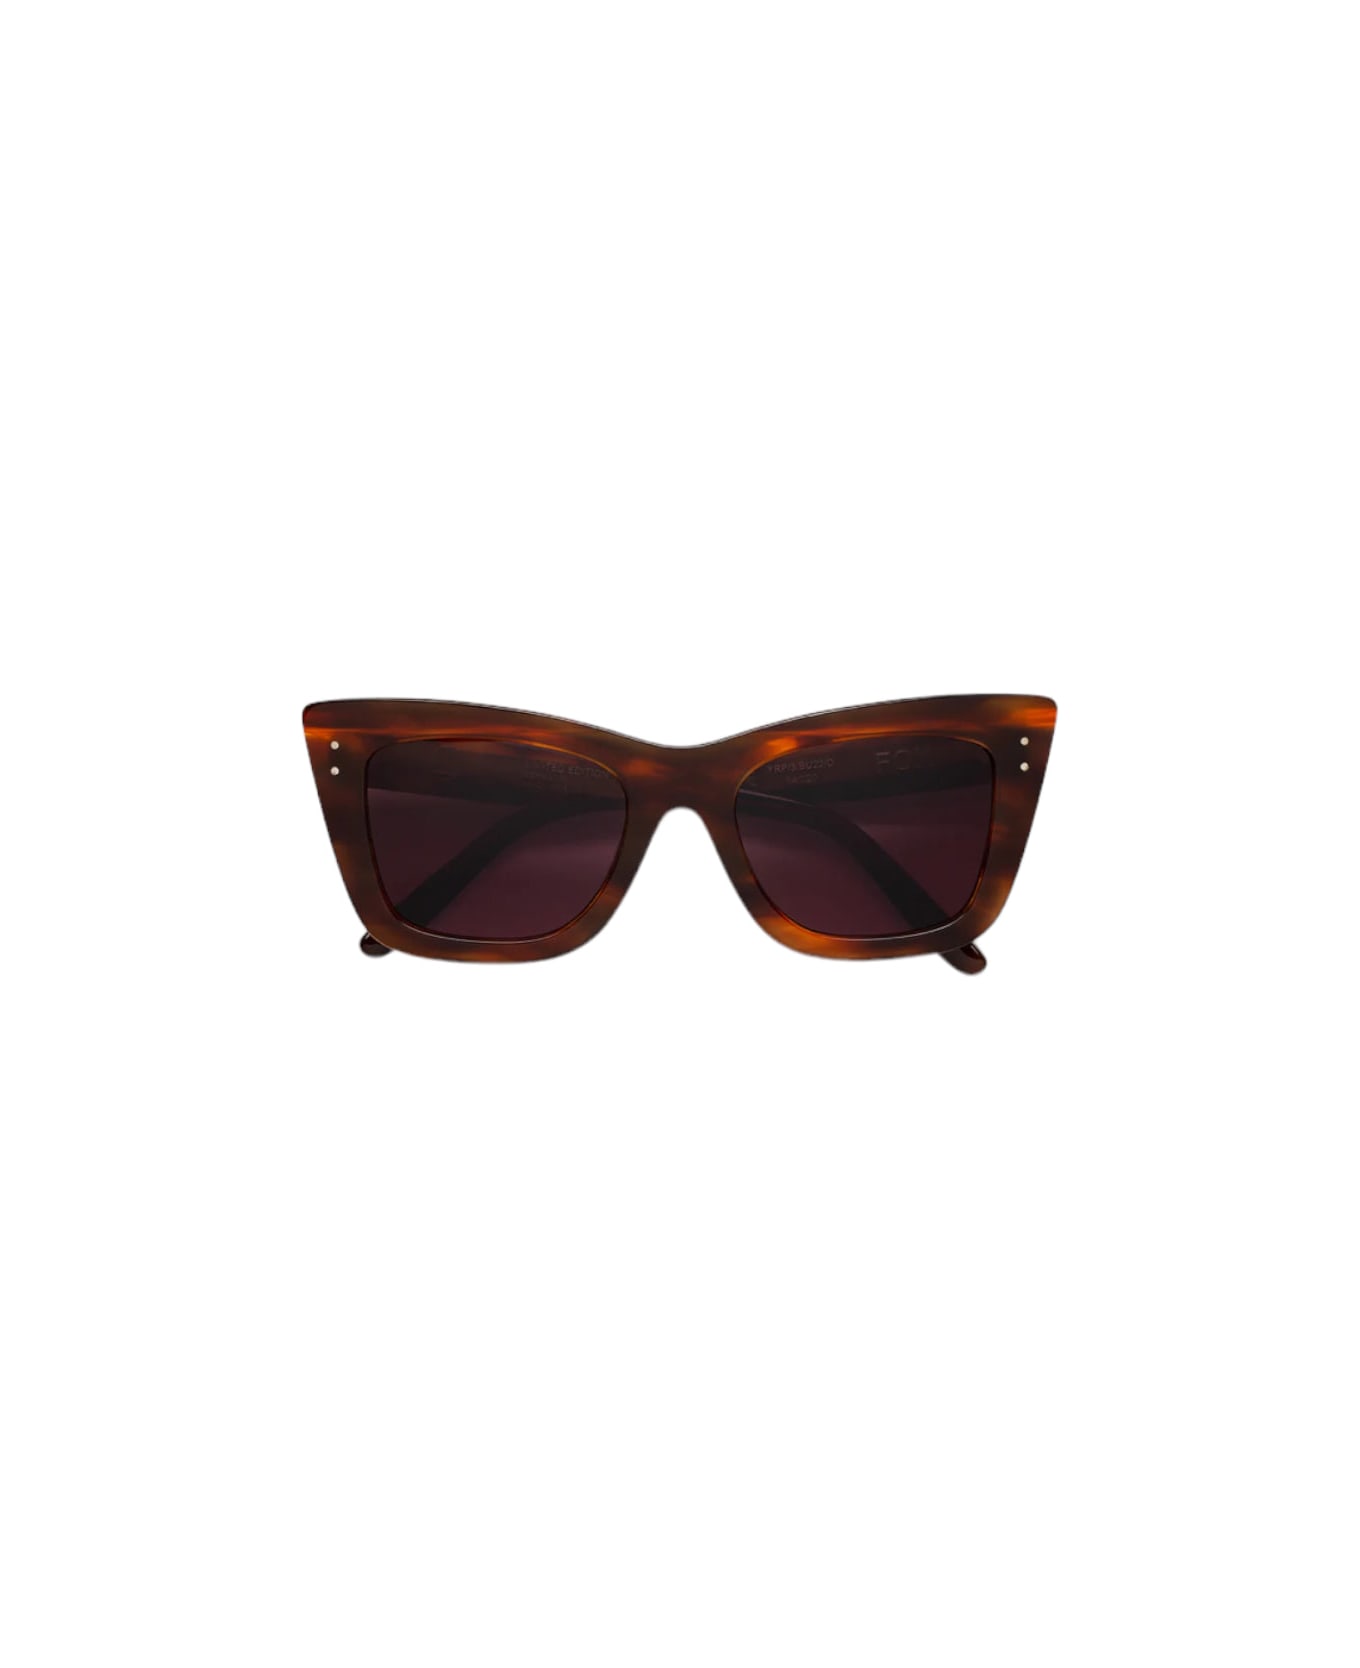 RETROSUPERFUTURE Fox - Limited Edition - Tobacco Sunglasses